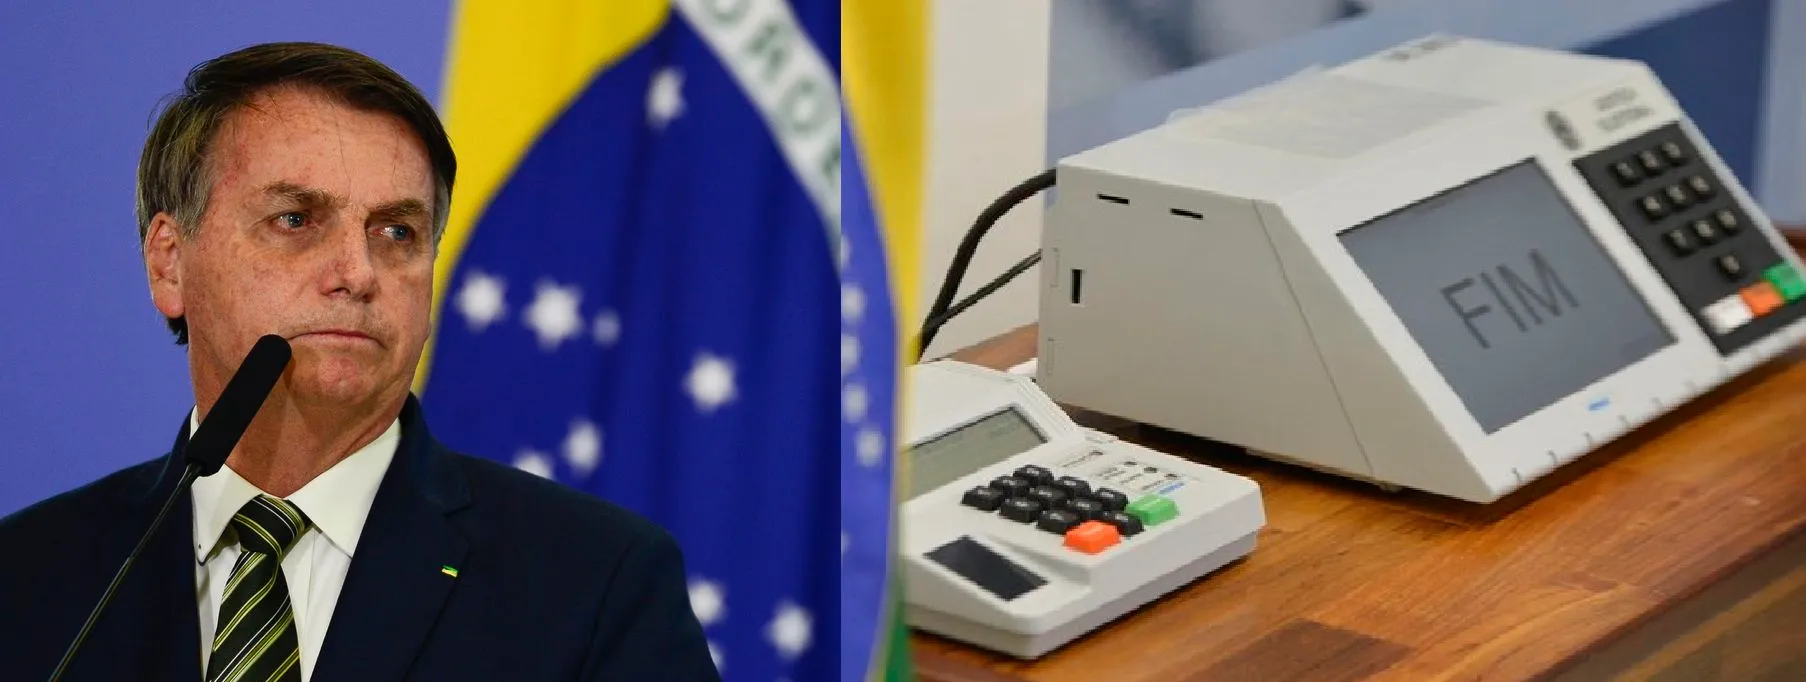 Procuradores pedem que PGR investigue Bolsonaro por ataque às urnas